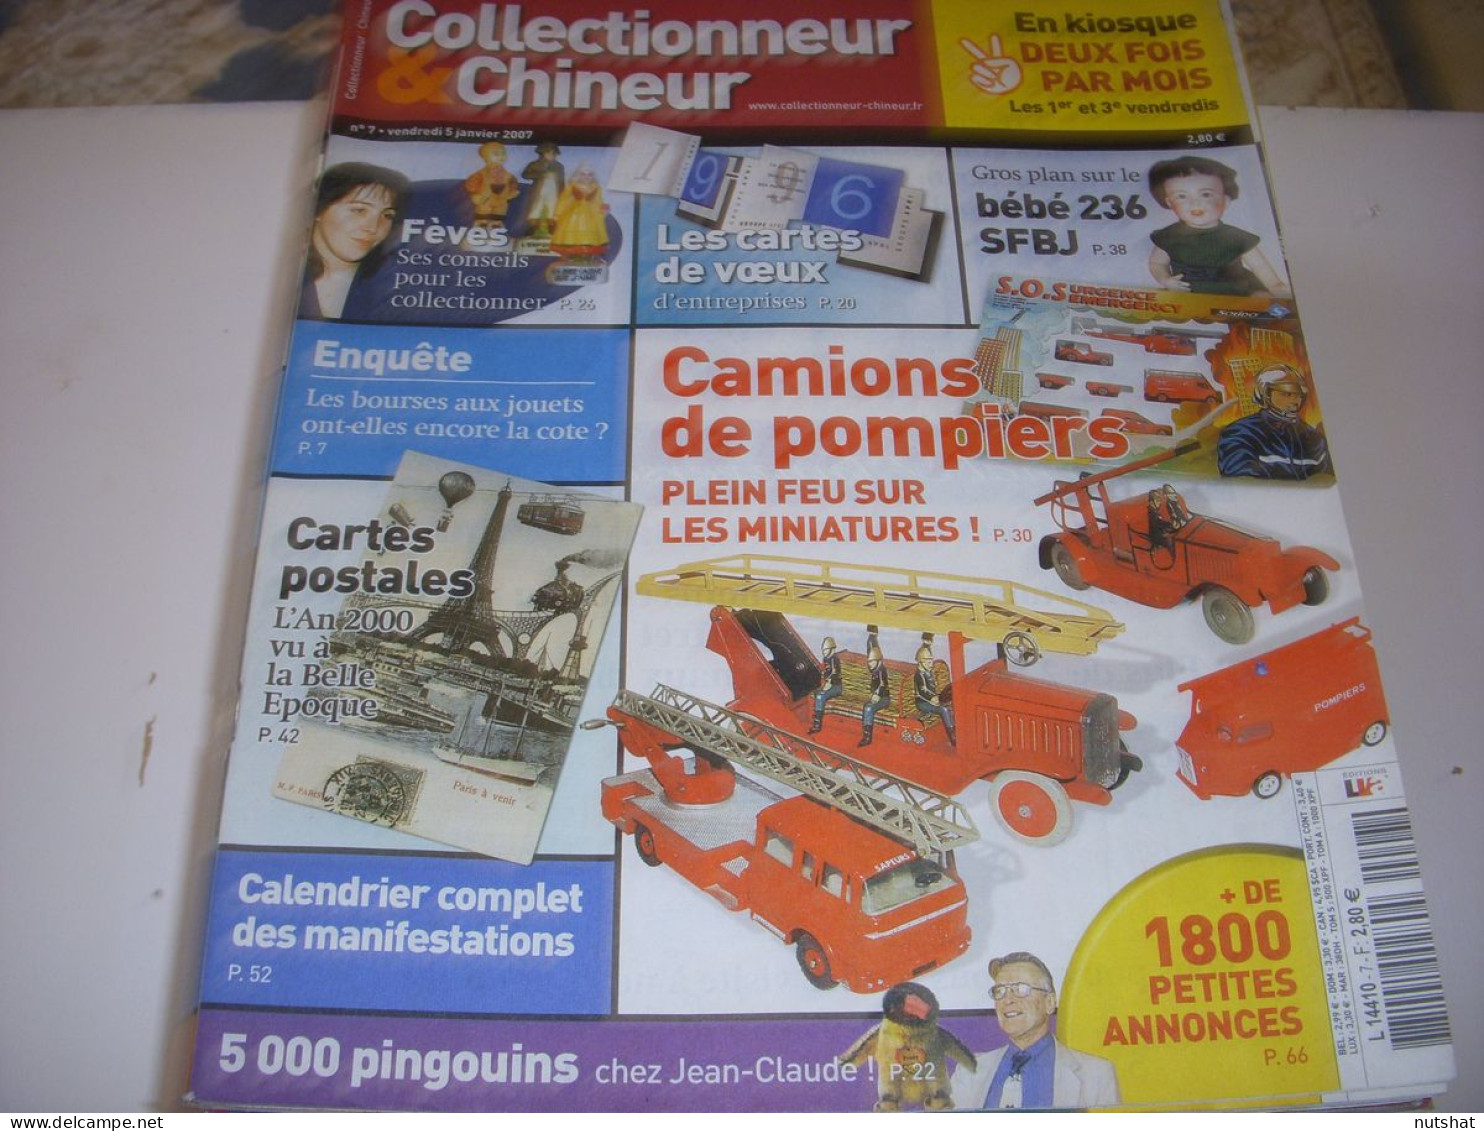 COLLECTIONNEUR CHINEUR 007 05.01.2007 BOURSE AUX JOUETS FAIENCES MACONNIQUES - Collectors